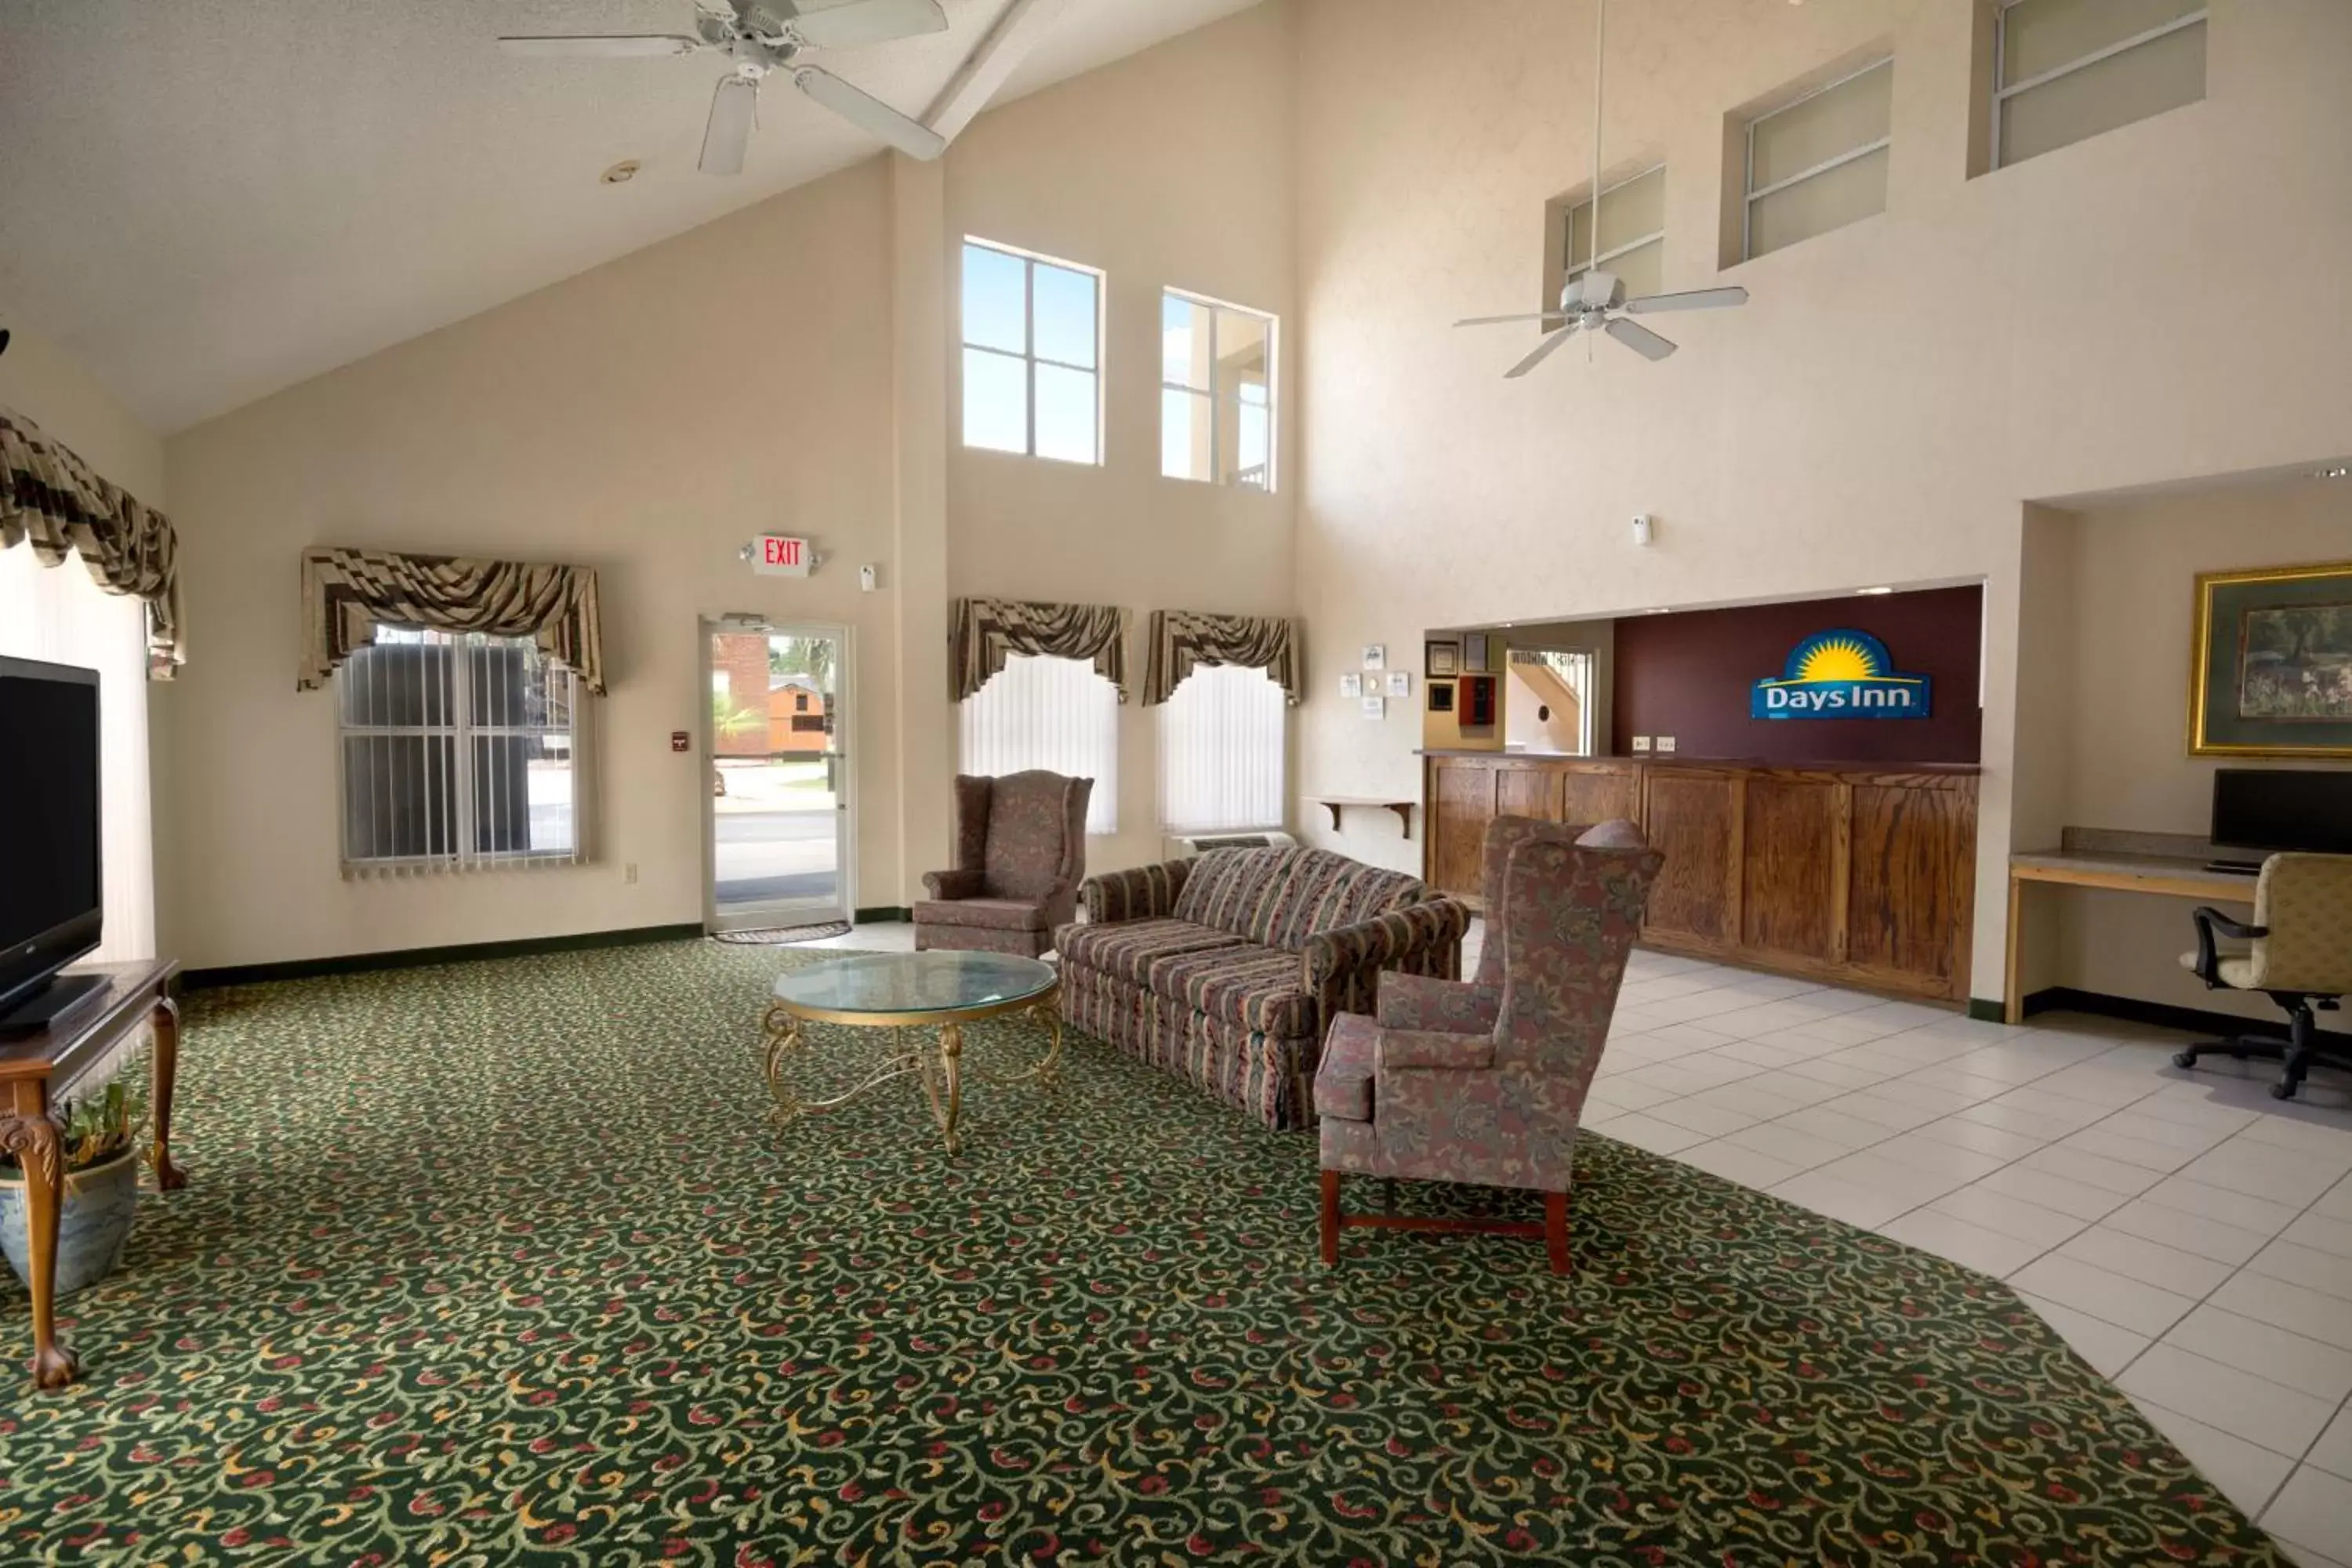 Lobby or reception, Seating Area in Days Inn by Wyndham Alma